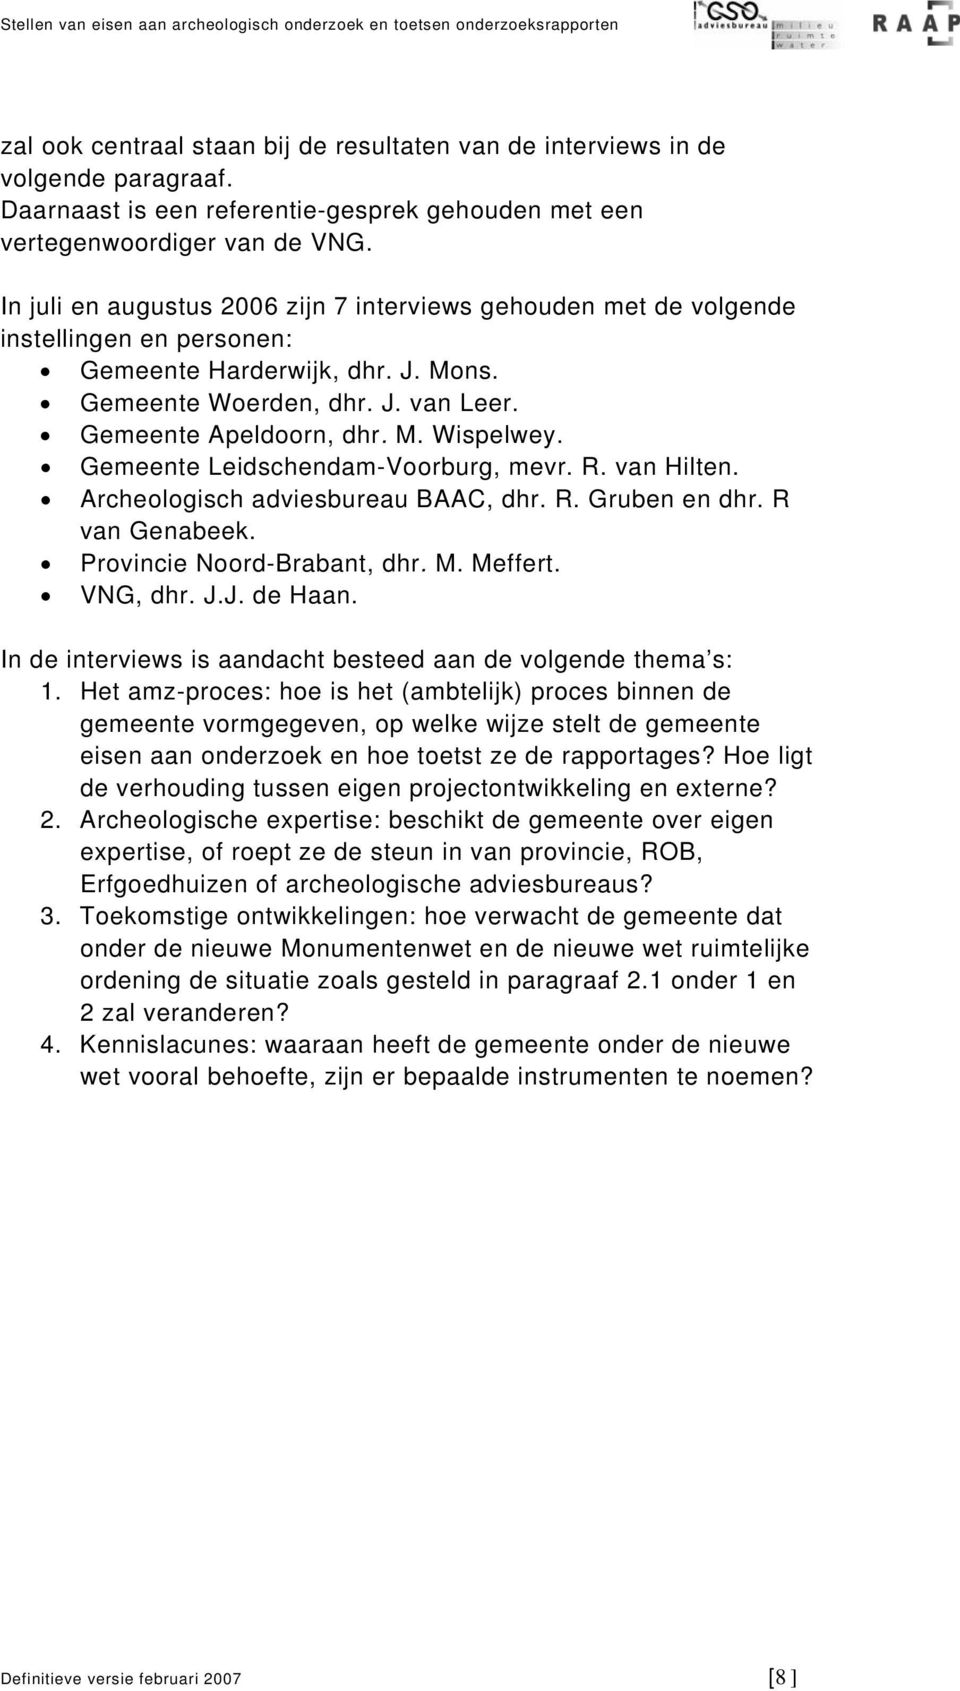 Gemeente Leidschendam-Voorburg, mevr. R. van Hilten. Archeologisch adviesbureau BAAC, dhr. R. Gruben en dhr. R van Genabeek. Provincie Noord-Brabant, dhr. M. Meffert. VNG, dhr. J.J. de Haan.